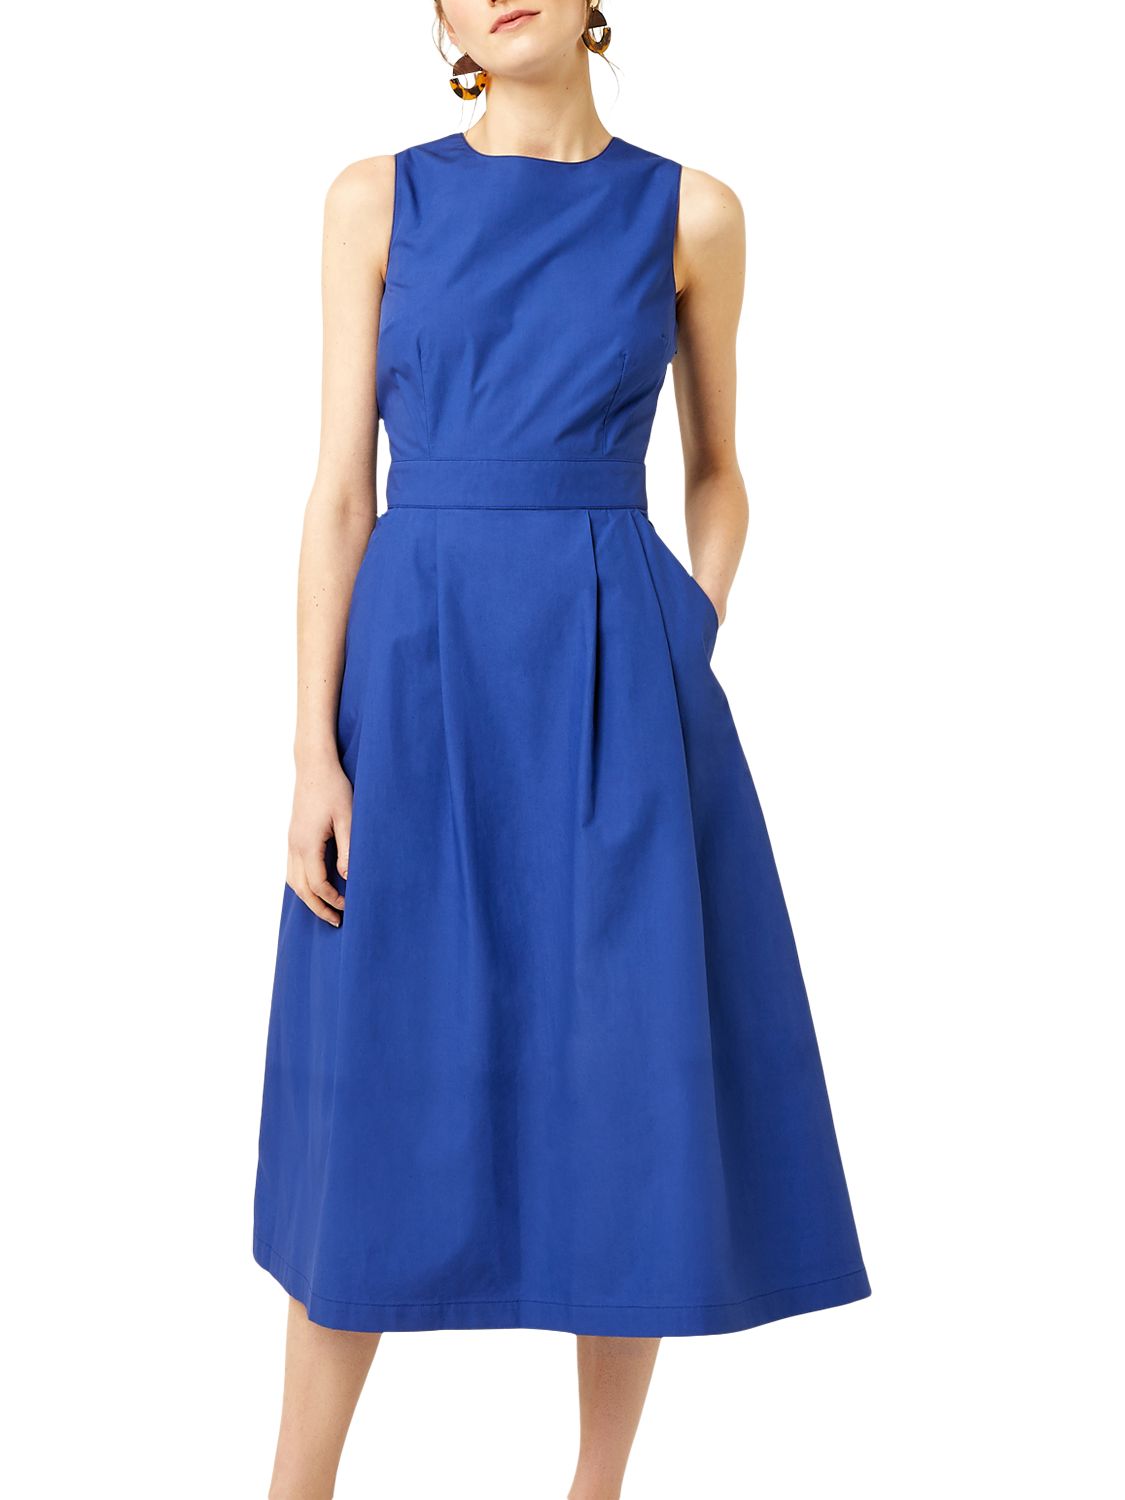 Warehouse Cotton Tie Back Midi Dress, Bright Blue, 8